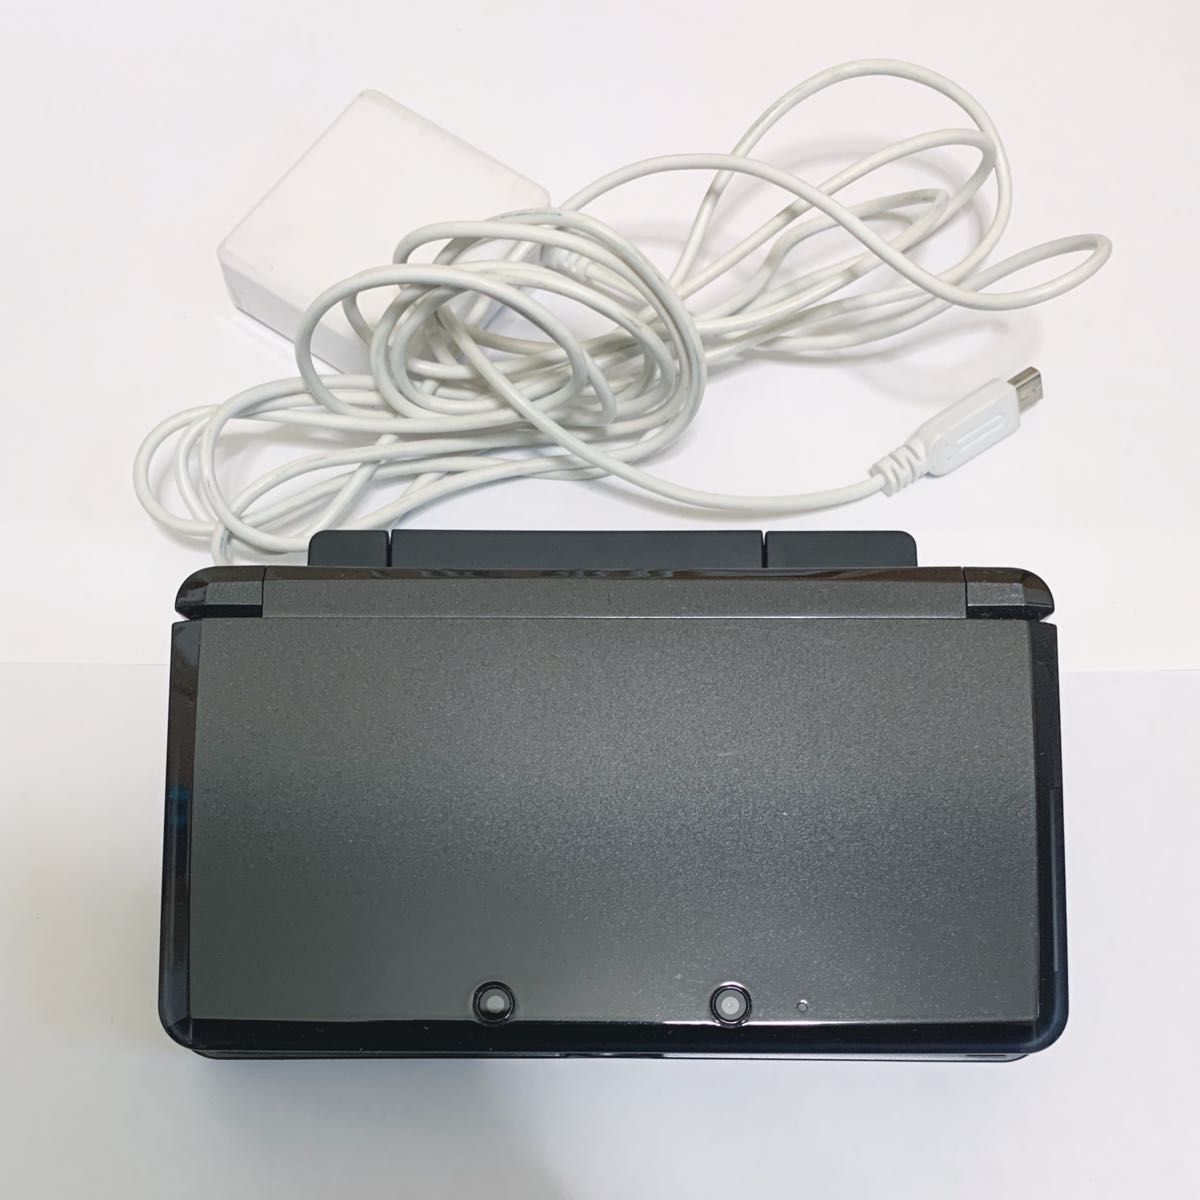 正常動作品 Nintendo 3DS ニンテンドー3DS 本体 付属品 充電器